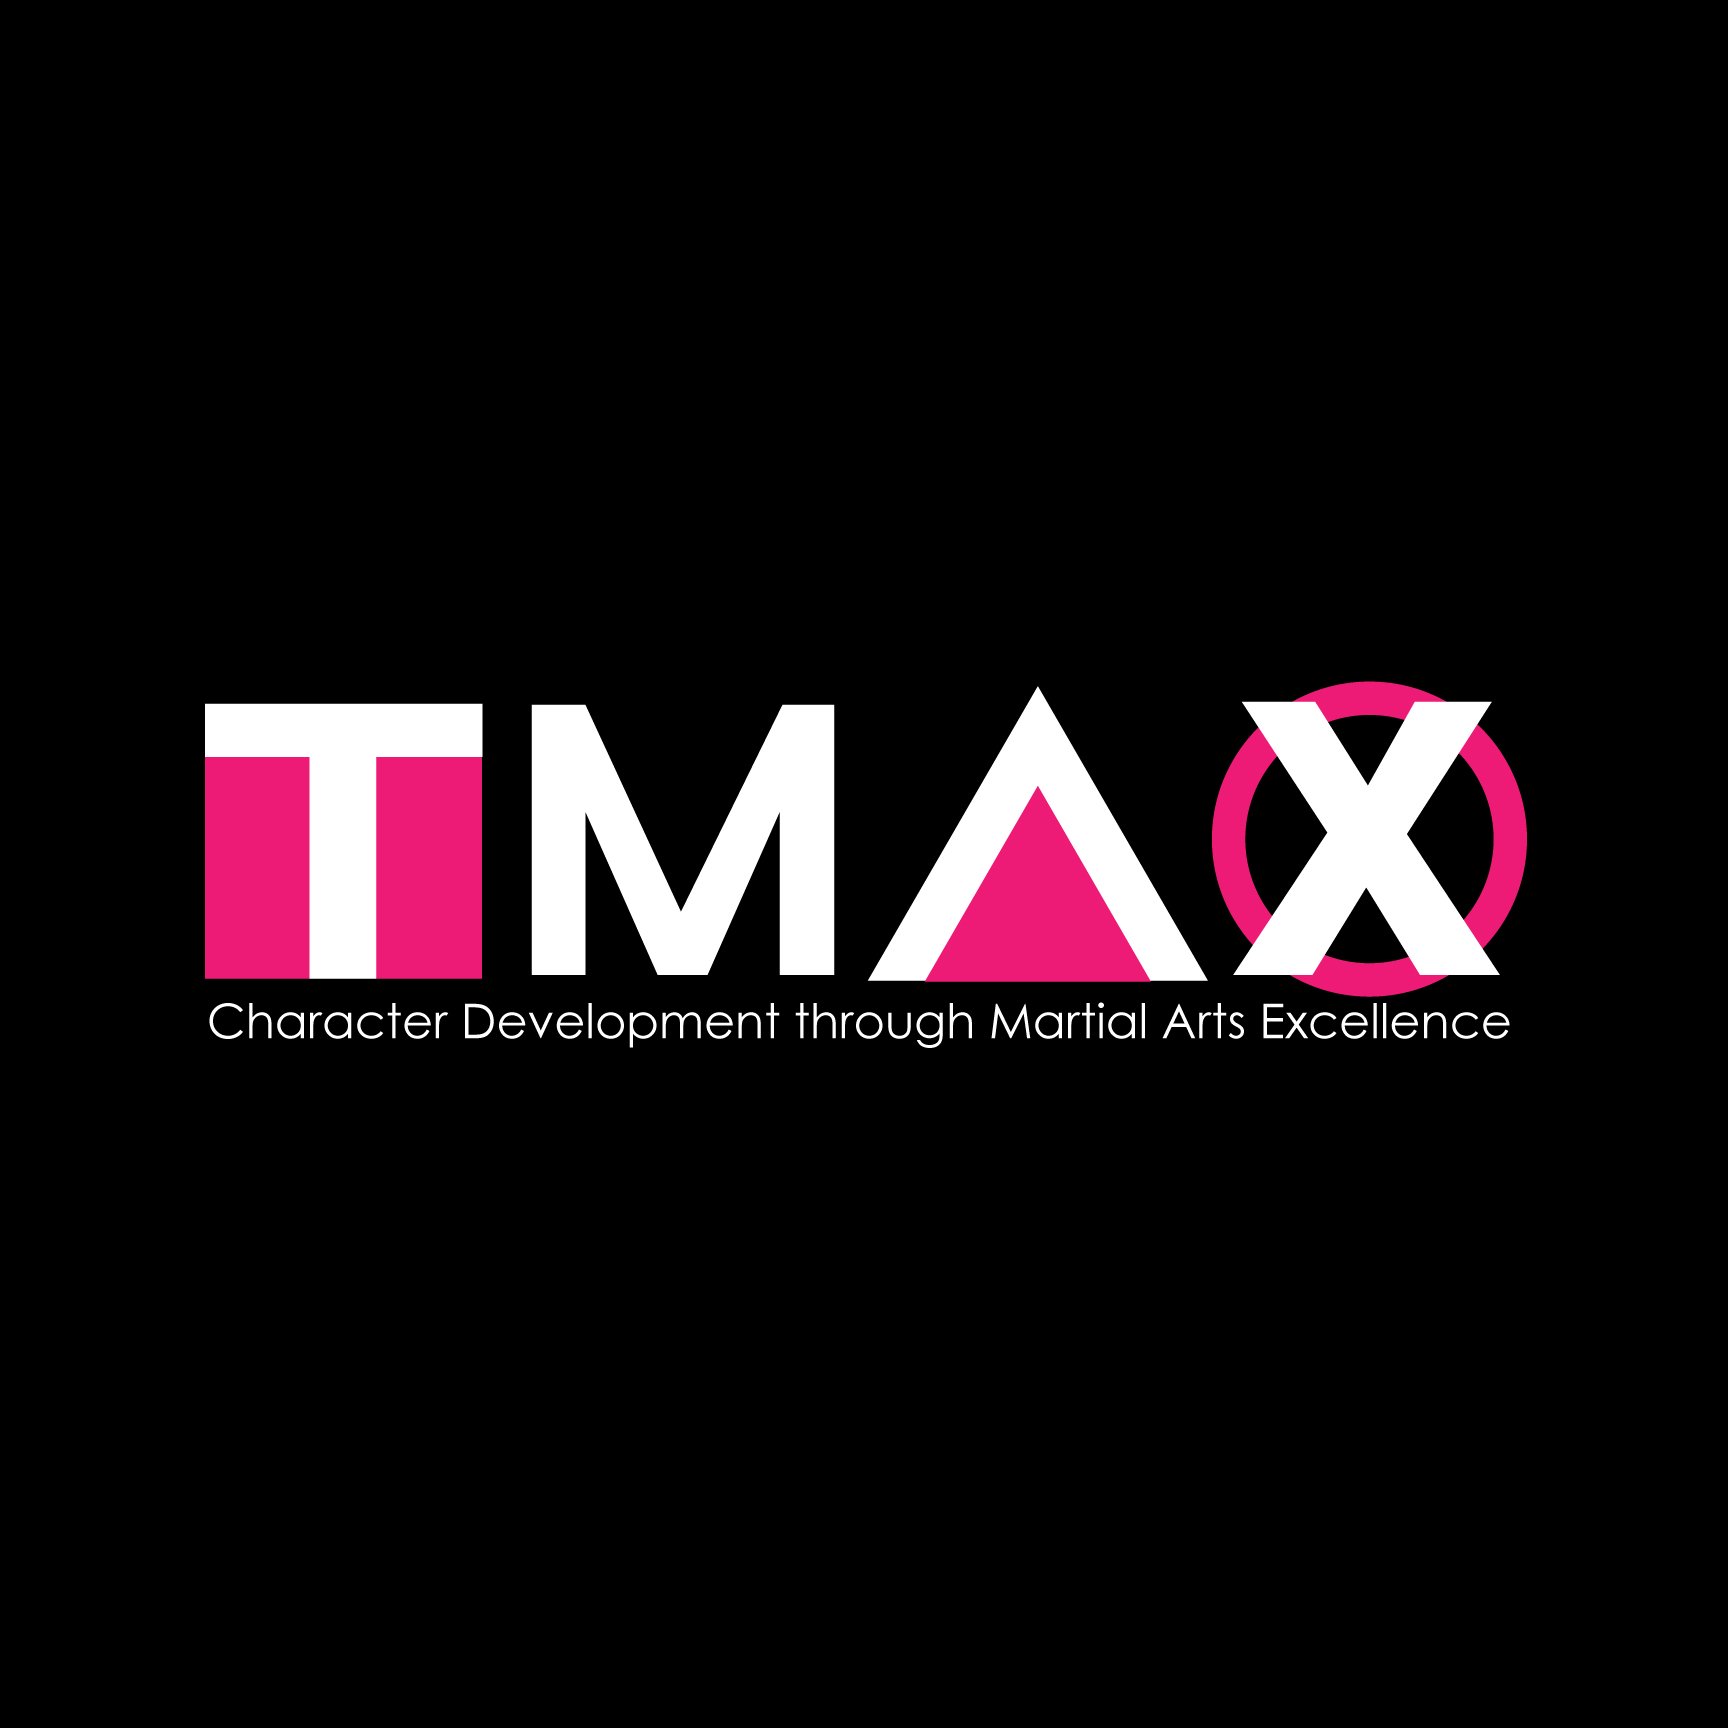 TMAX_logo_wall.jpg